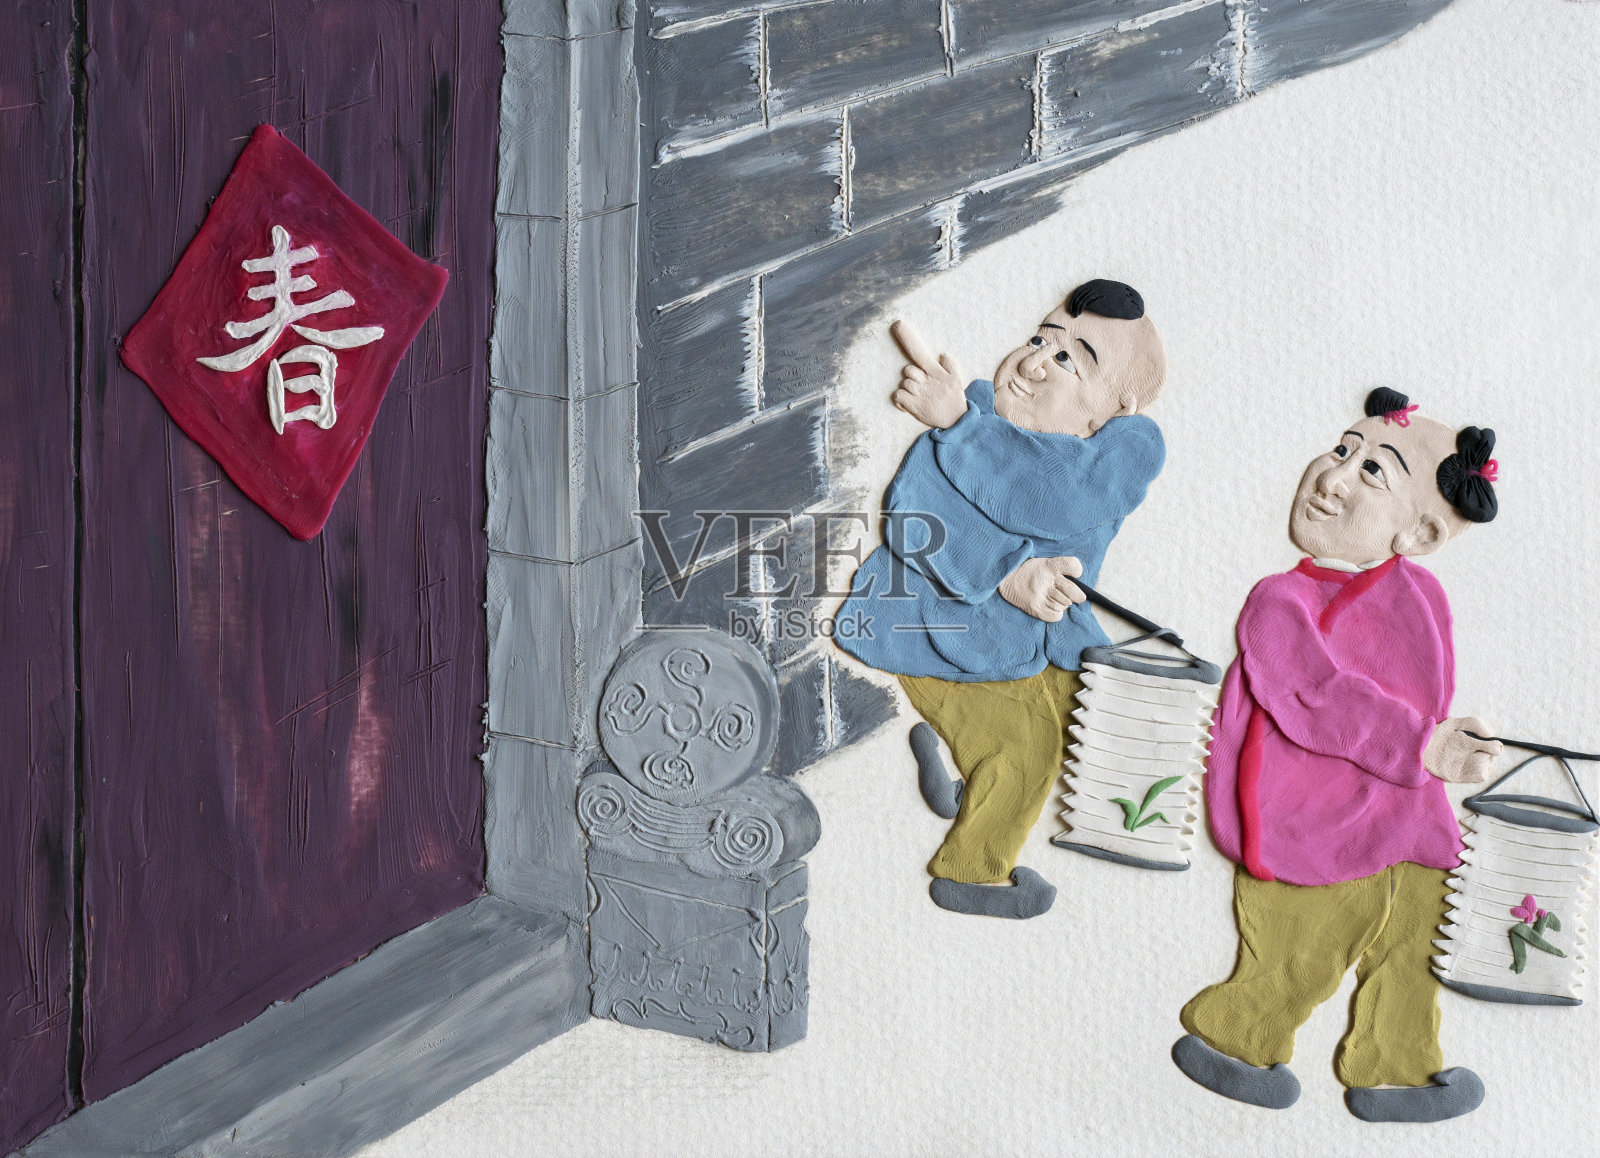 手工泥塑插图:中国的春节装饰品插画图片素材